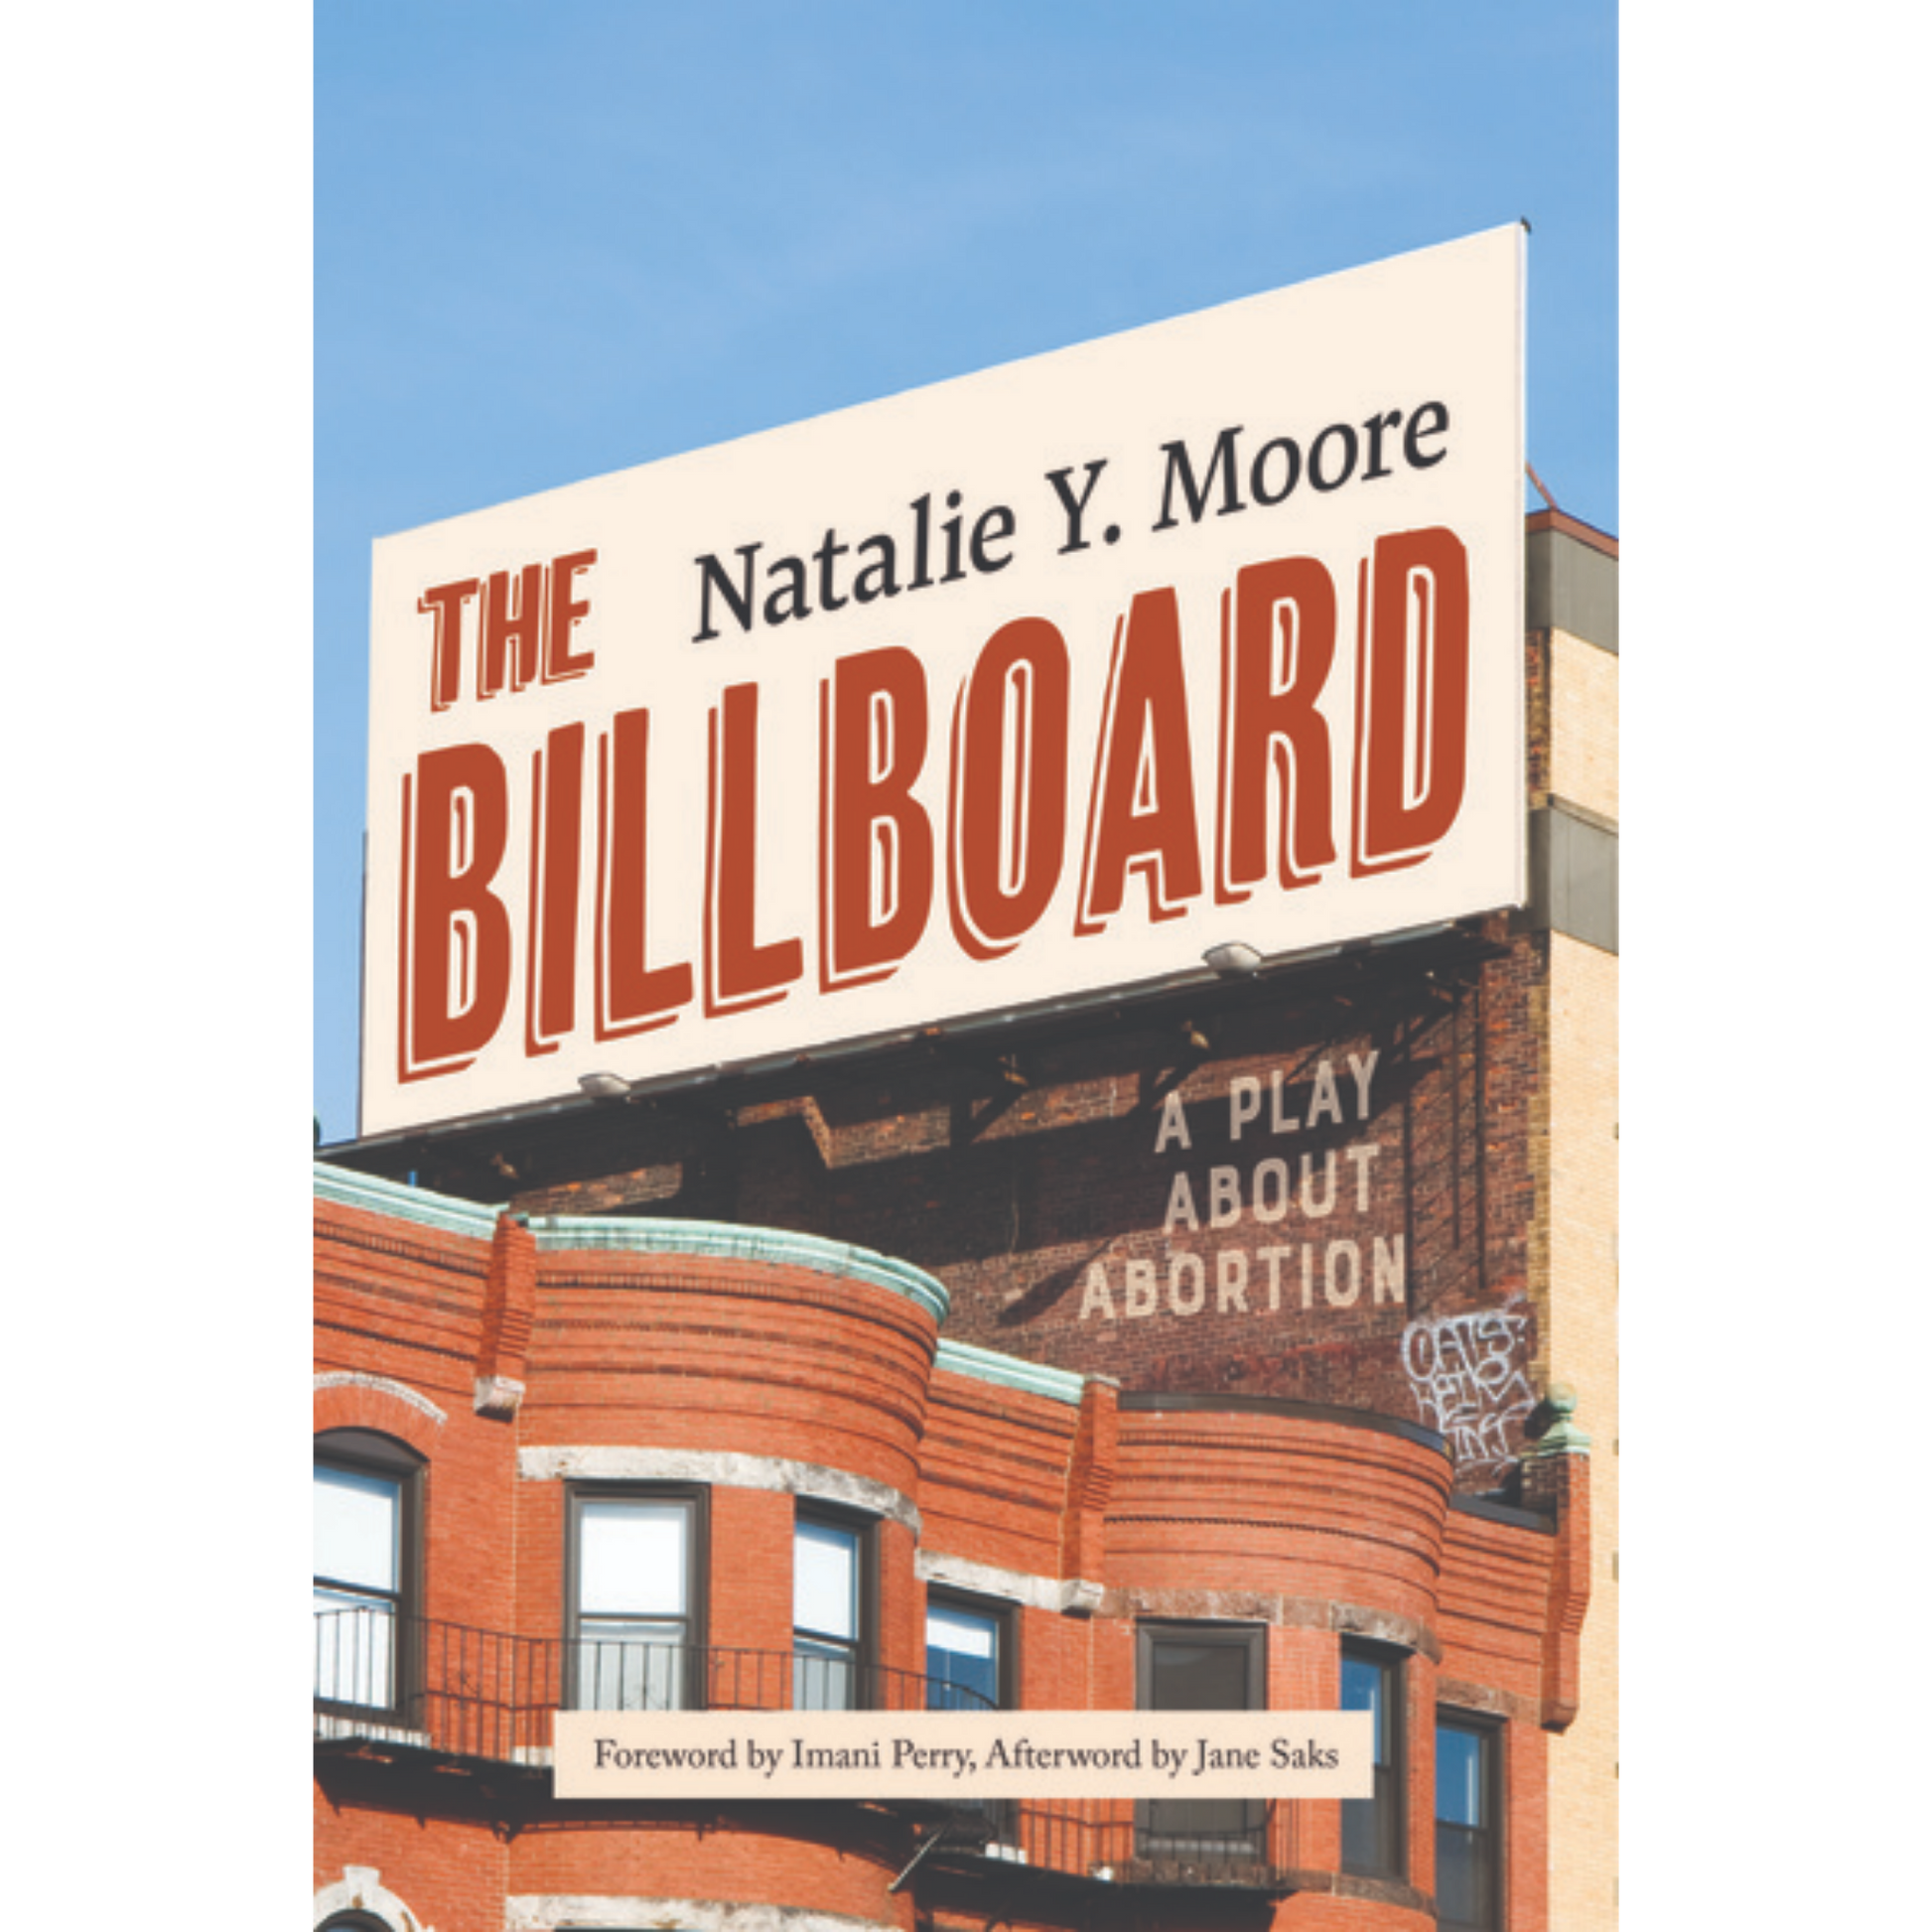 the billboard natalie y moore